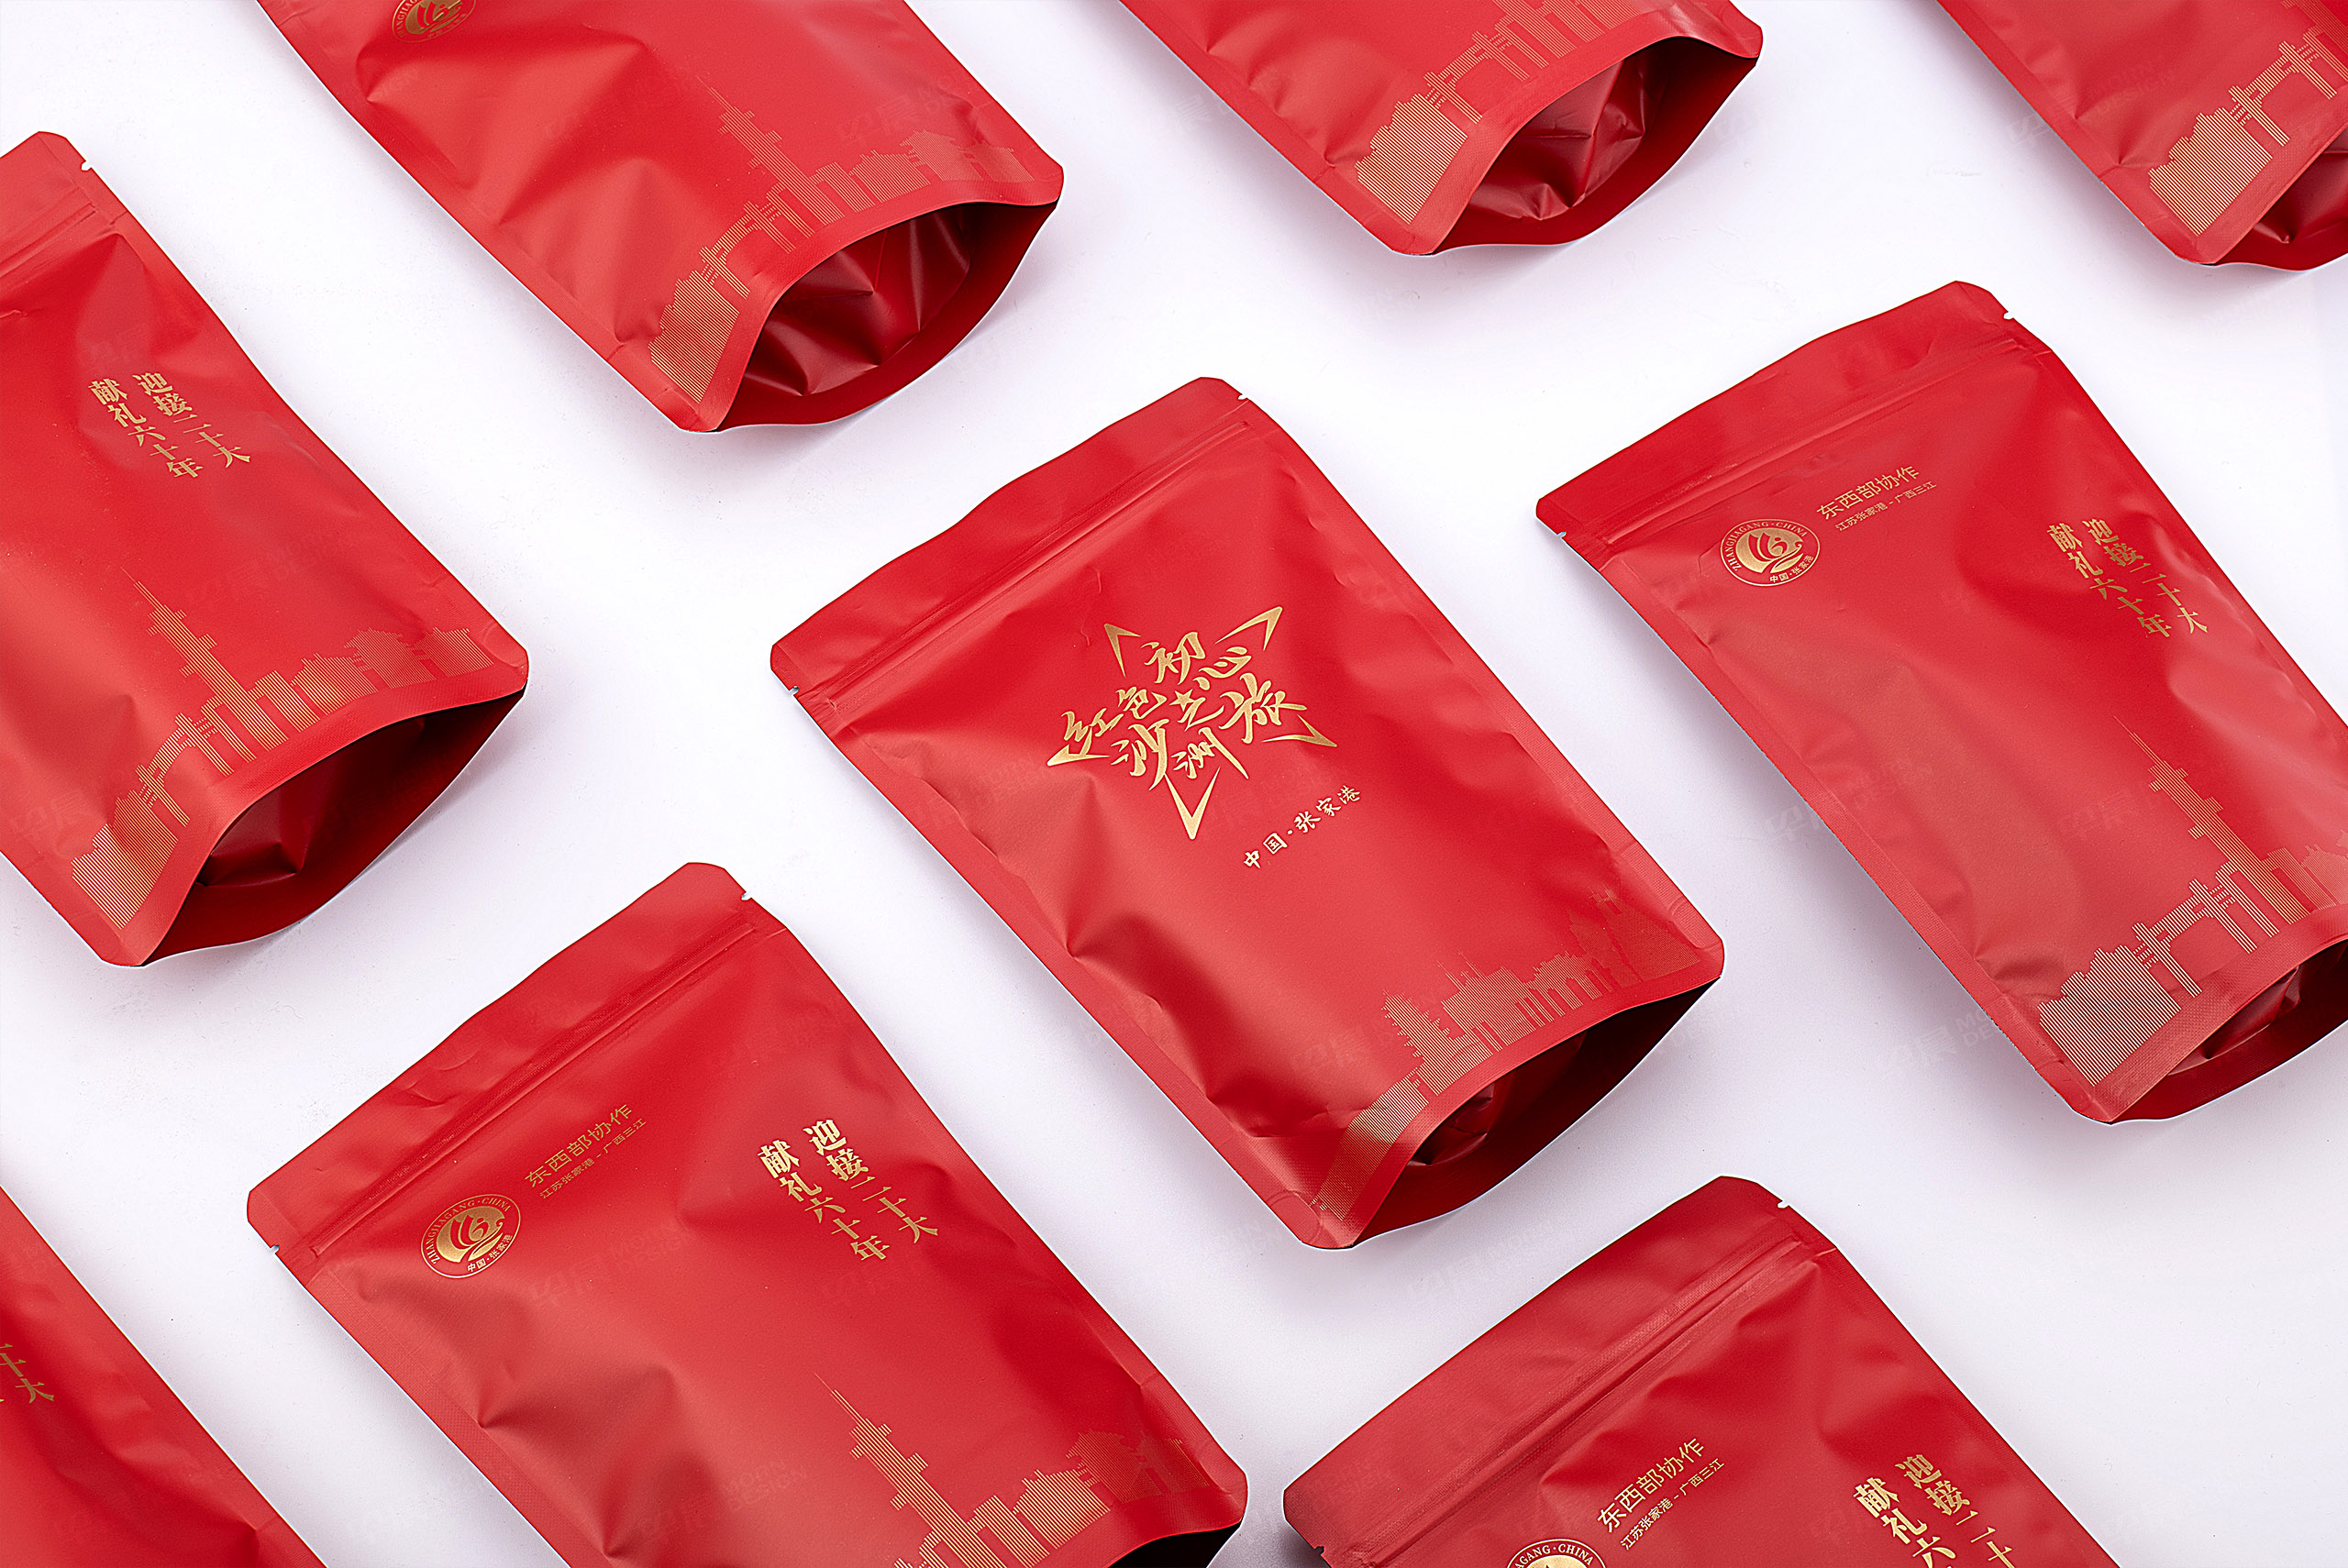 玫瑰花茶文创品牌包装设计-红色沙洲初心之旅-早晨设计包装设计作品